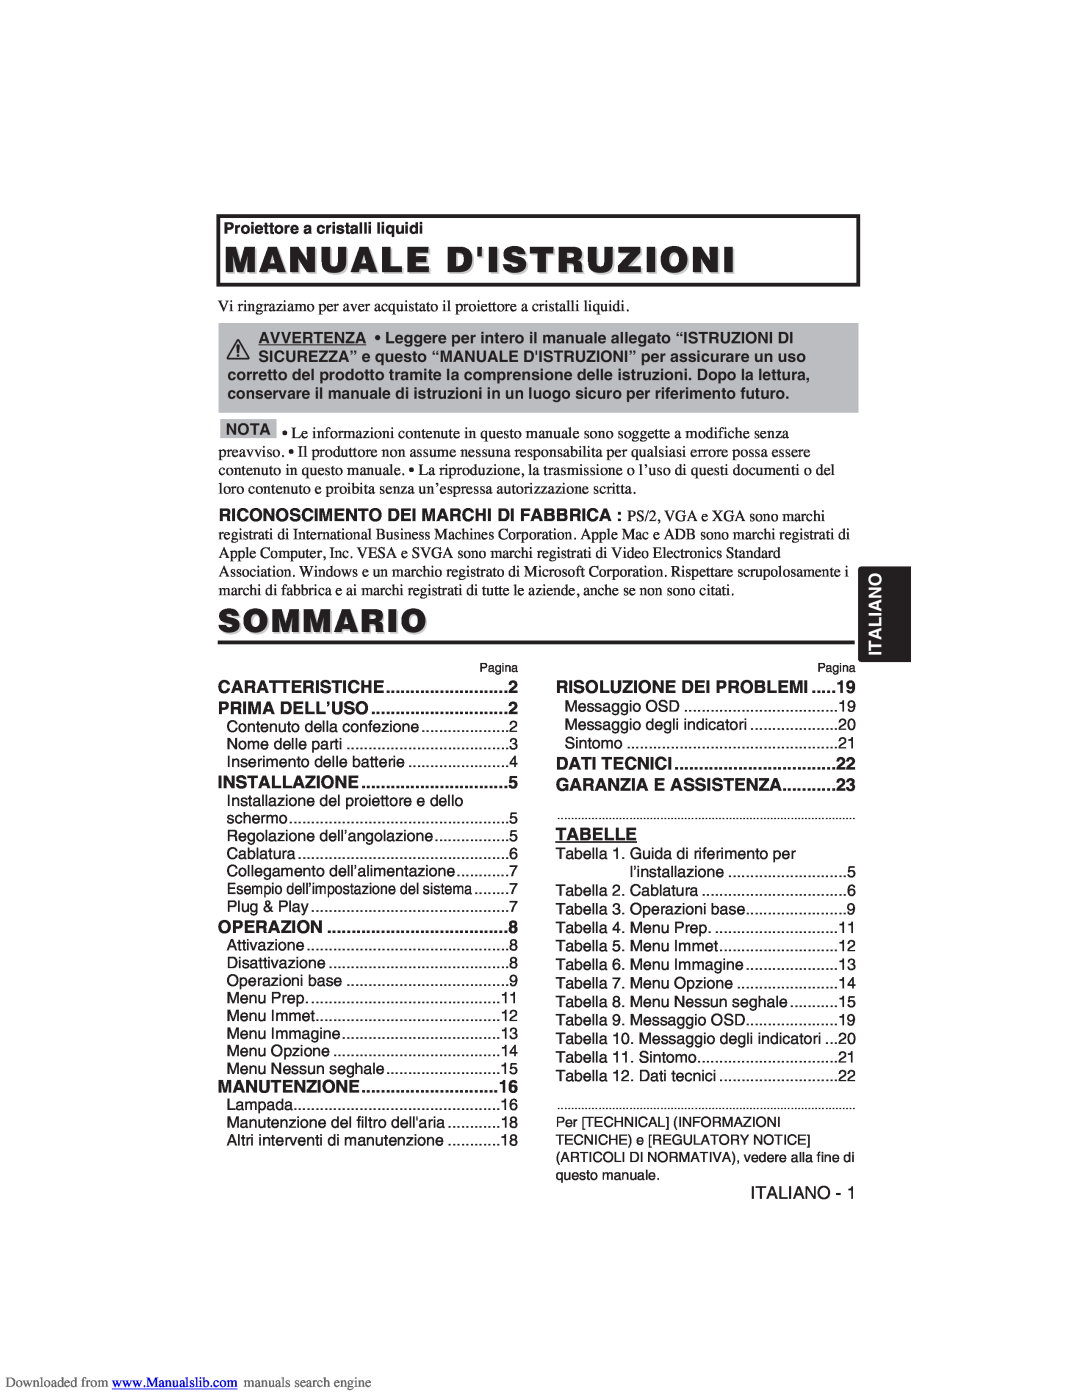 Hitachi CP-X275W Manuale Distruzioni, Sommario, Italiano, Risoluzione Dei Problemi, Garanzia E Assistenza, Tabelle 